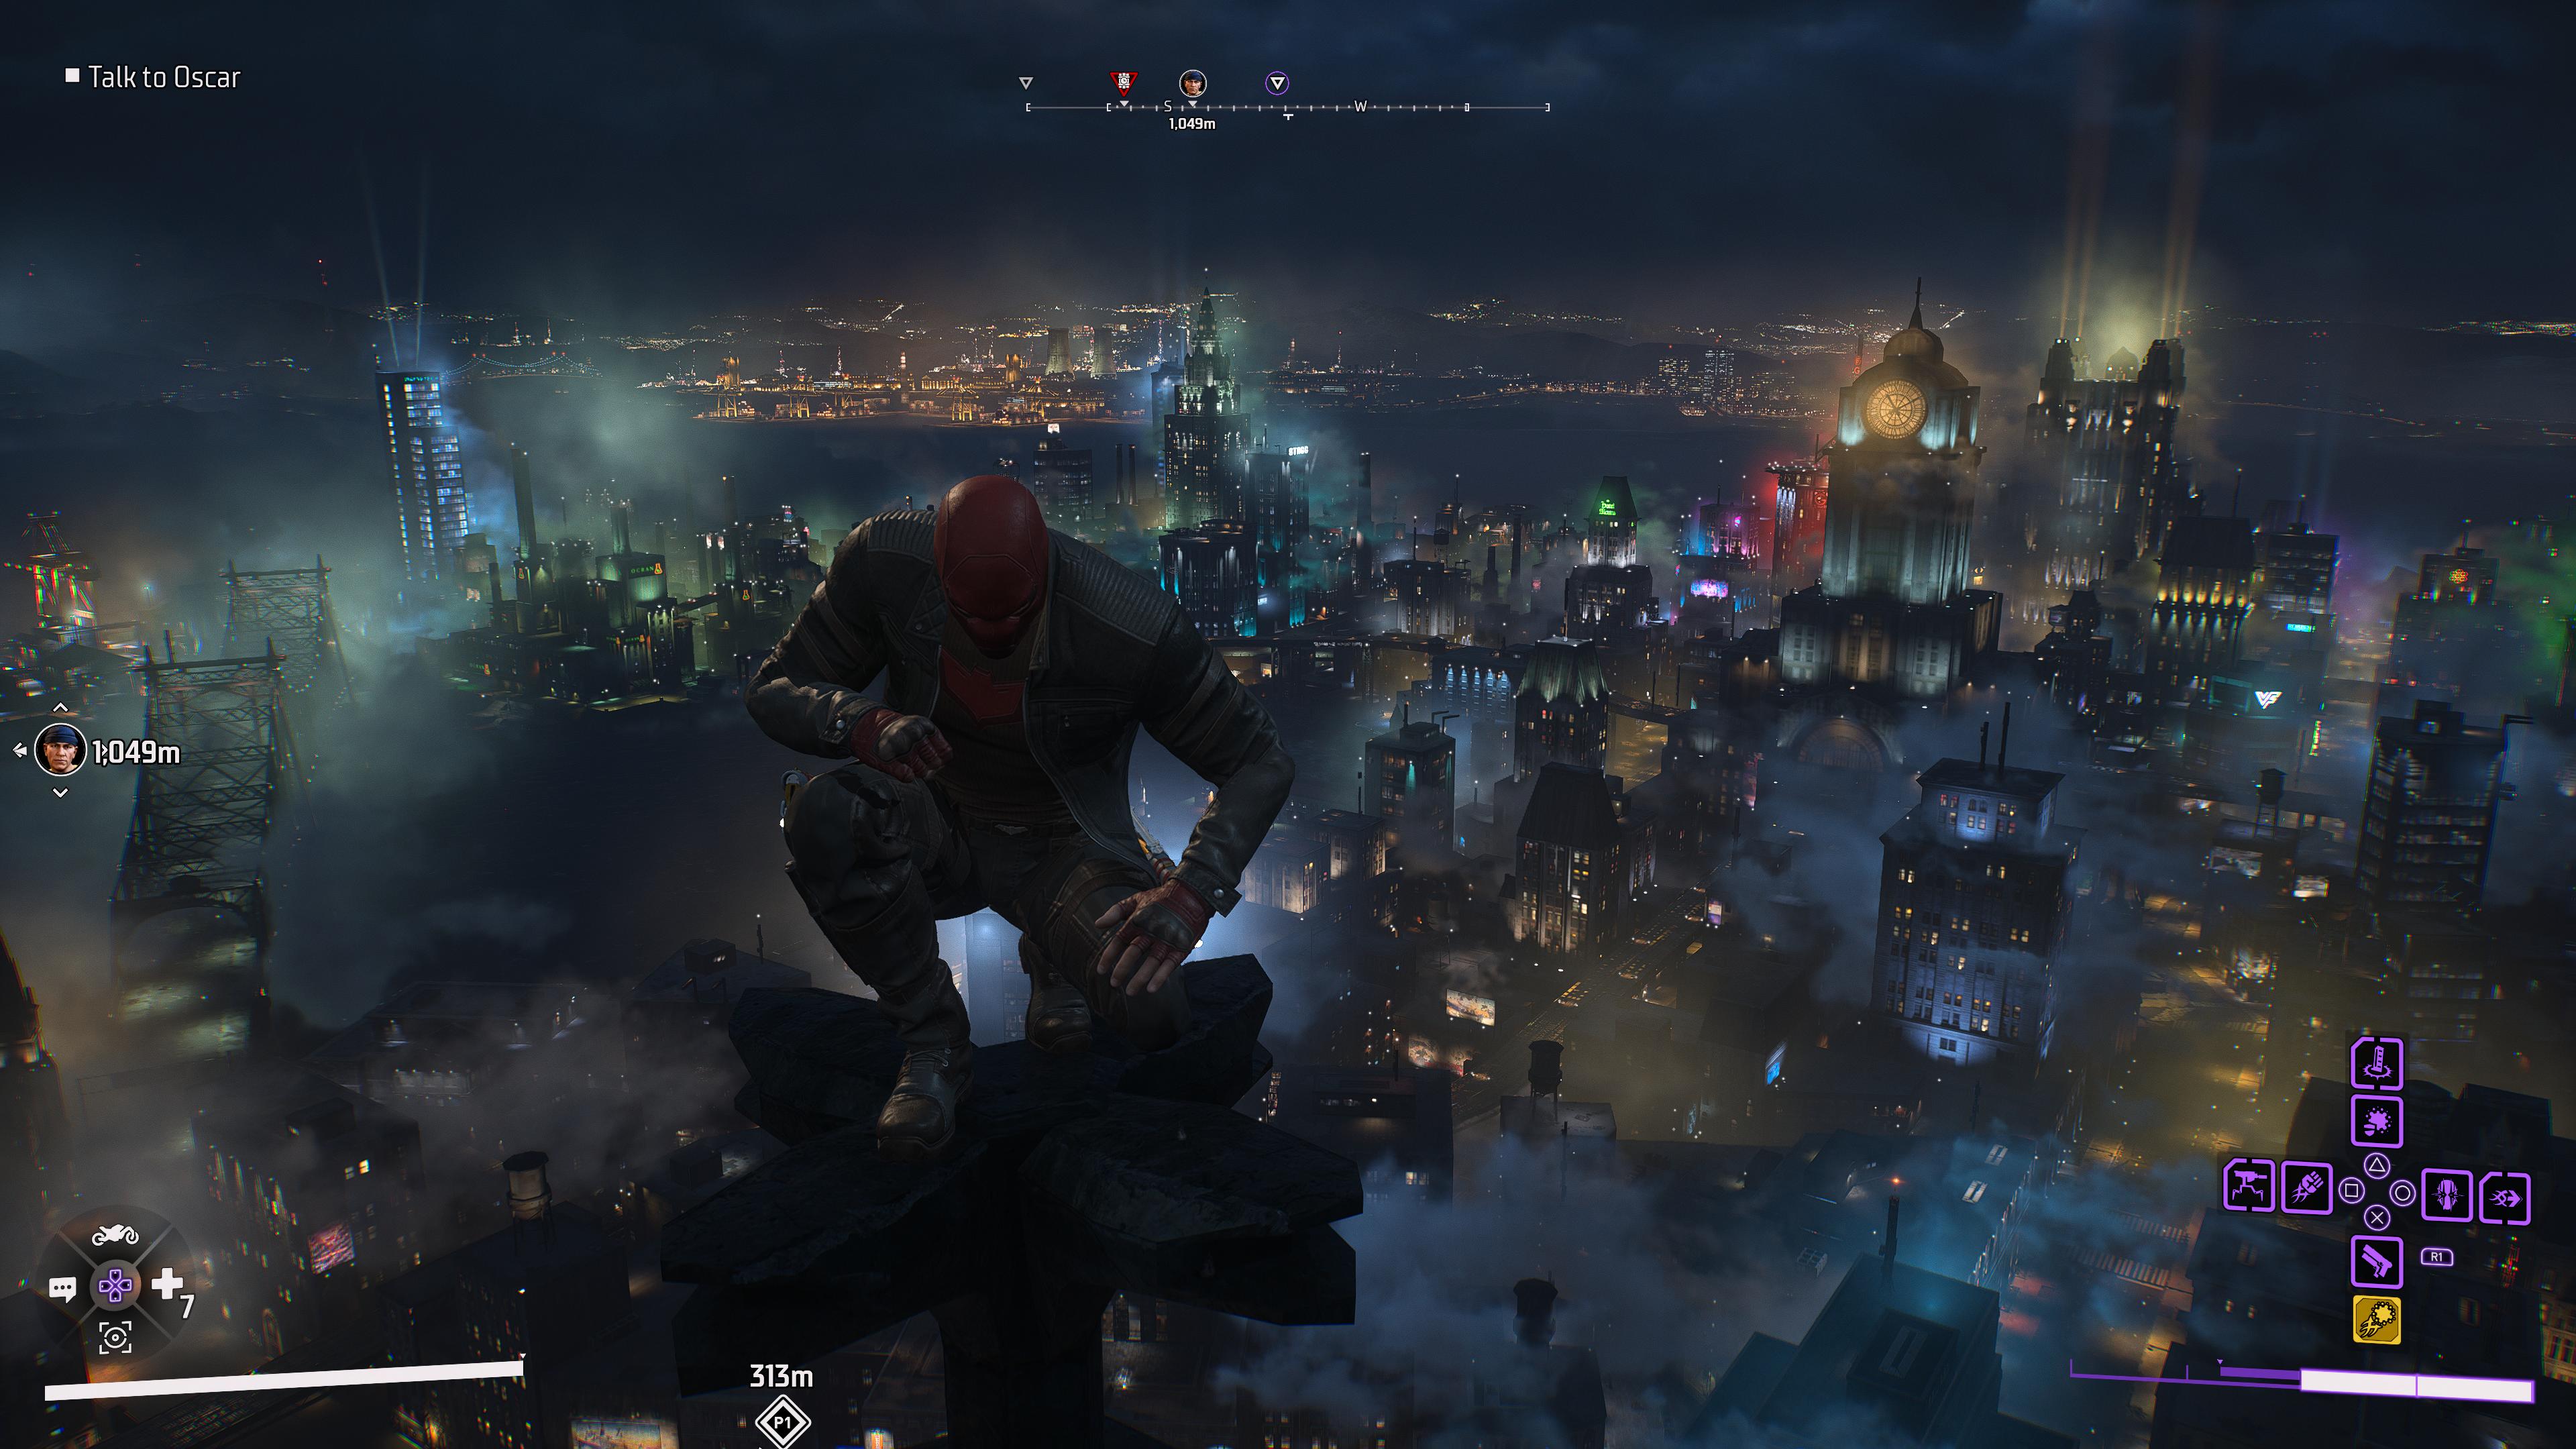 Gotham Knights Playtest Leaked On SteamDB